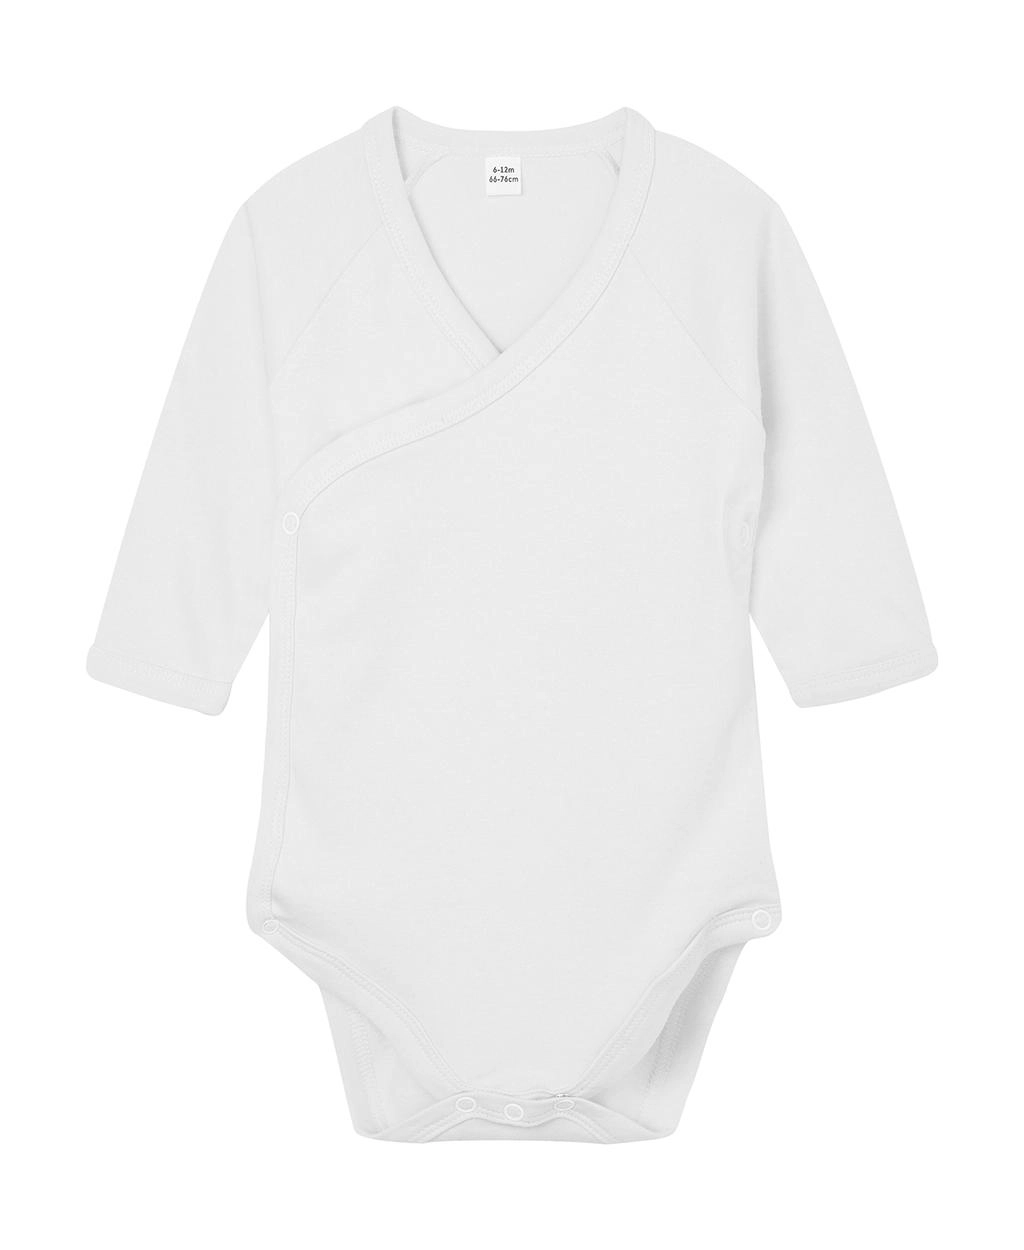 Baby Long Sleeve Kimono Bodysuit zum Besticken und Bedrucken in der Farbe White mit Ihren Logo, Schriftzug oder Motiv.